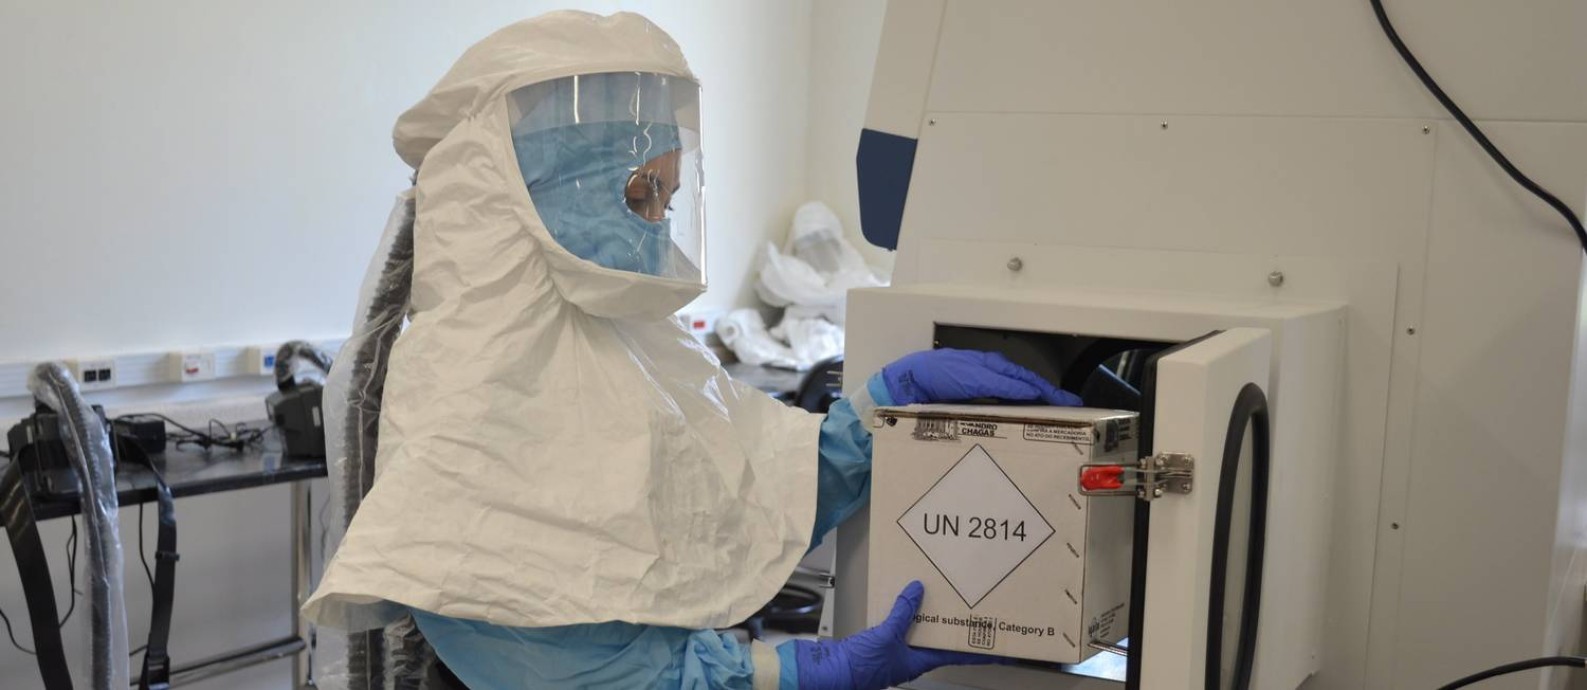 Pesquisadora recebe amostras de vírus para análise no Laboratório de Segurança Nível 3 (NB3), do Instituto Evandro Chagas, no Pará Foto: Kelvin Souza / Agência O Globo